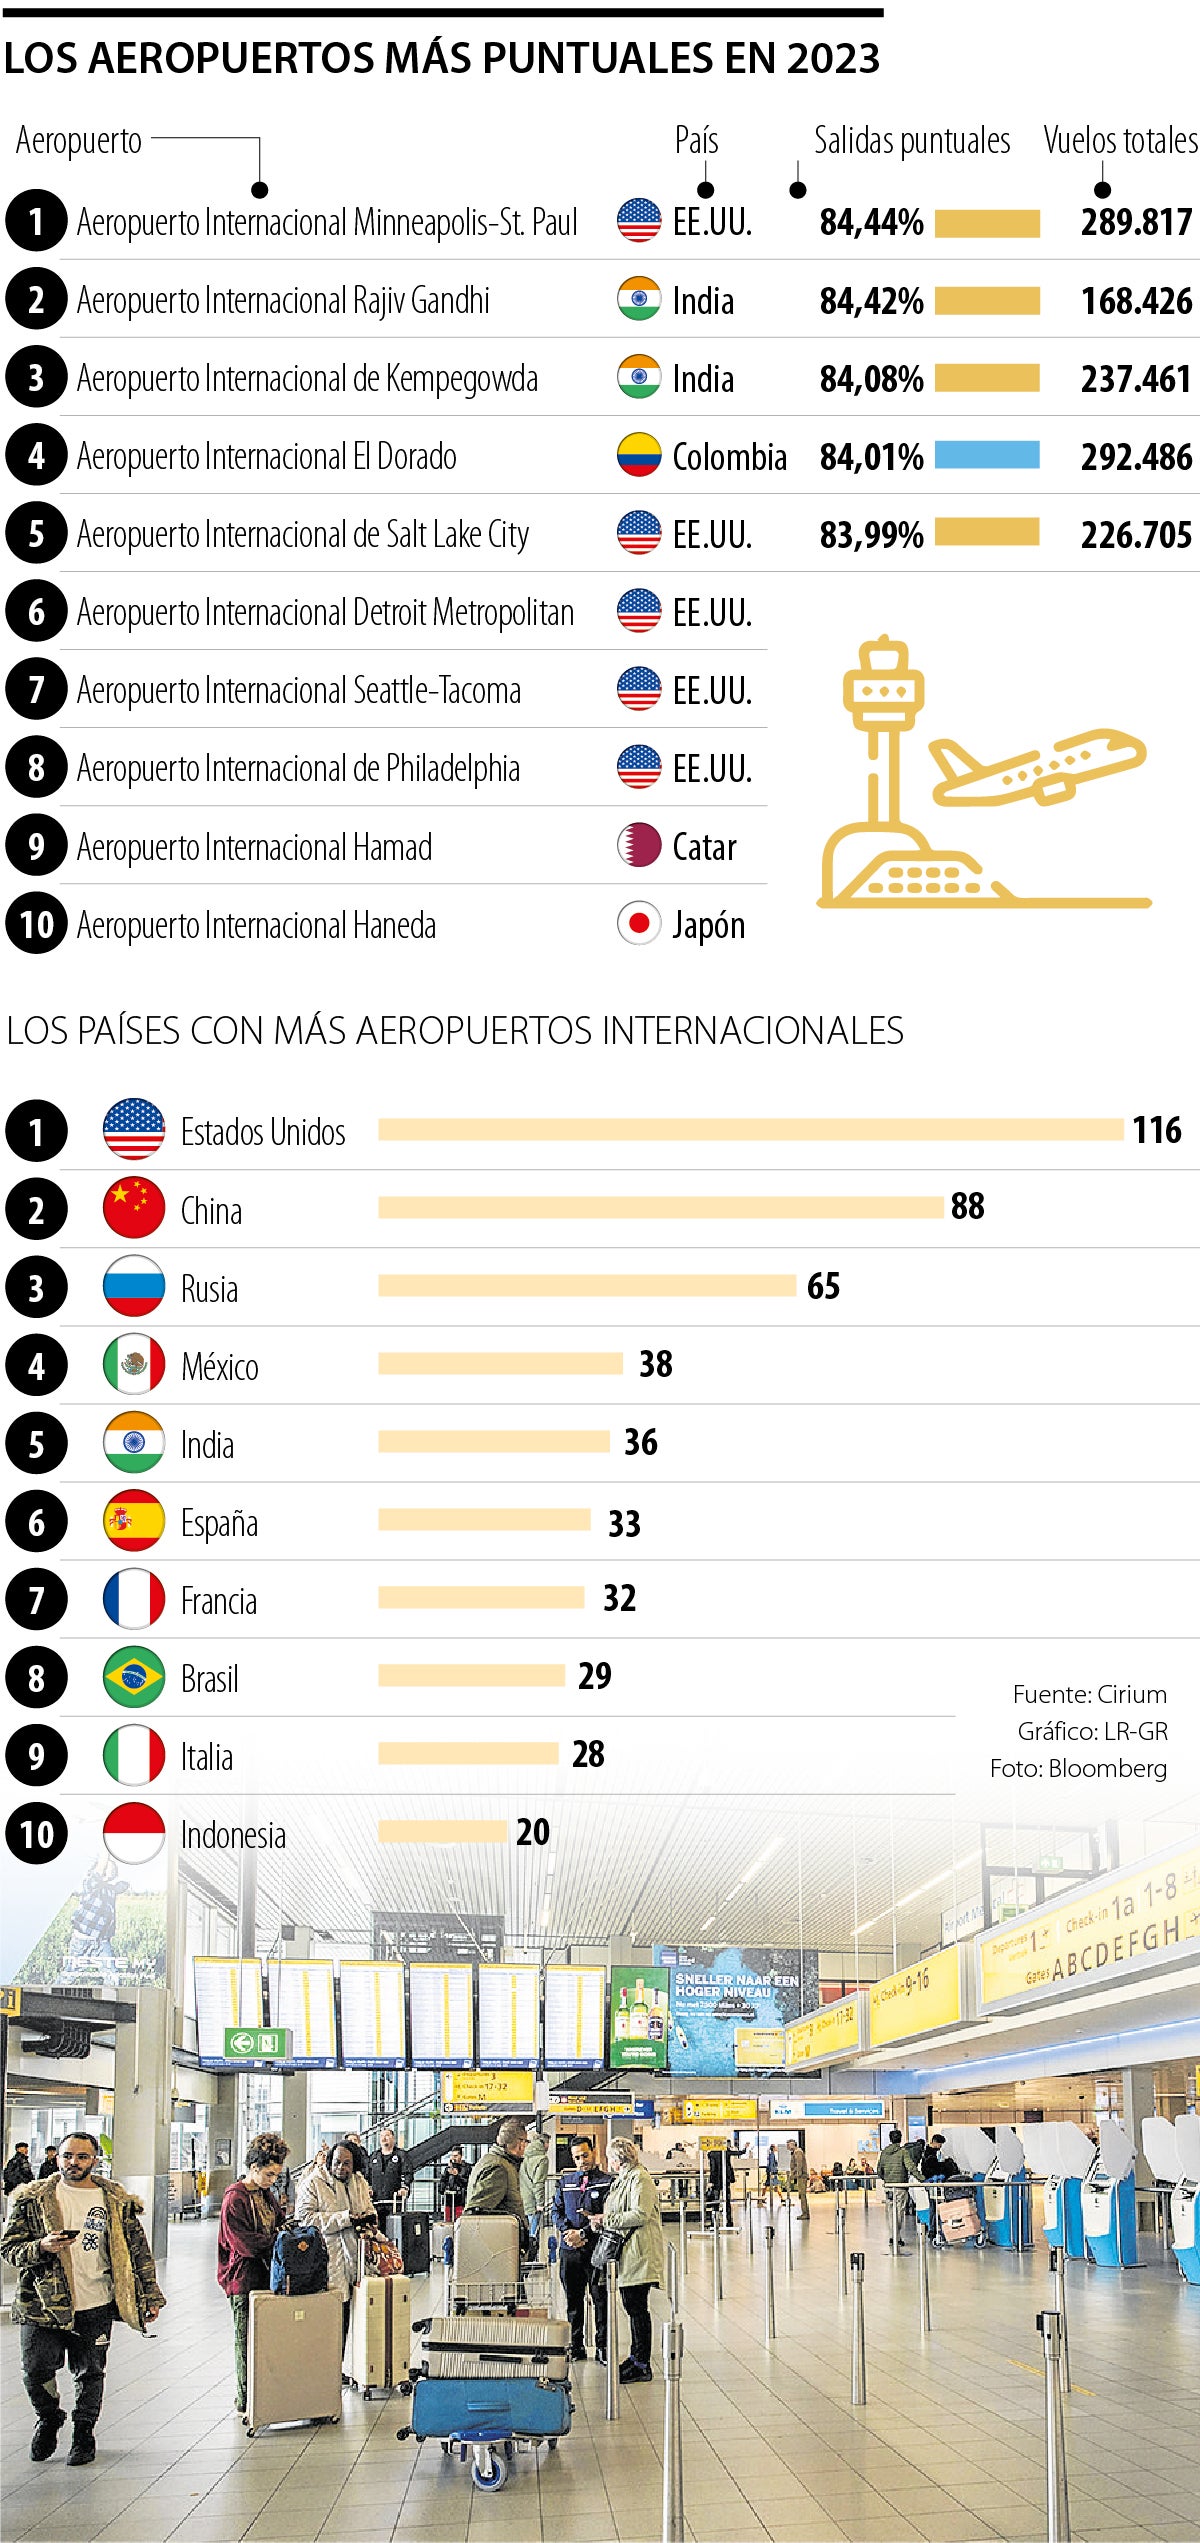 el dorado, el único aeropuerto de américa latina en los 10 más puntuales del mundo